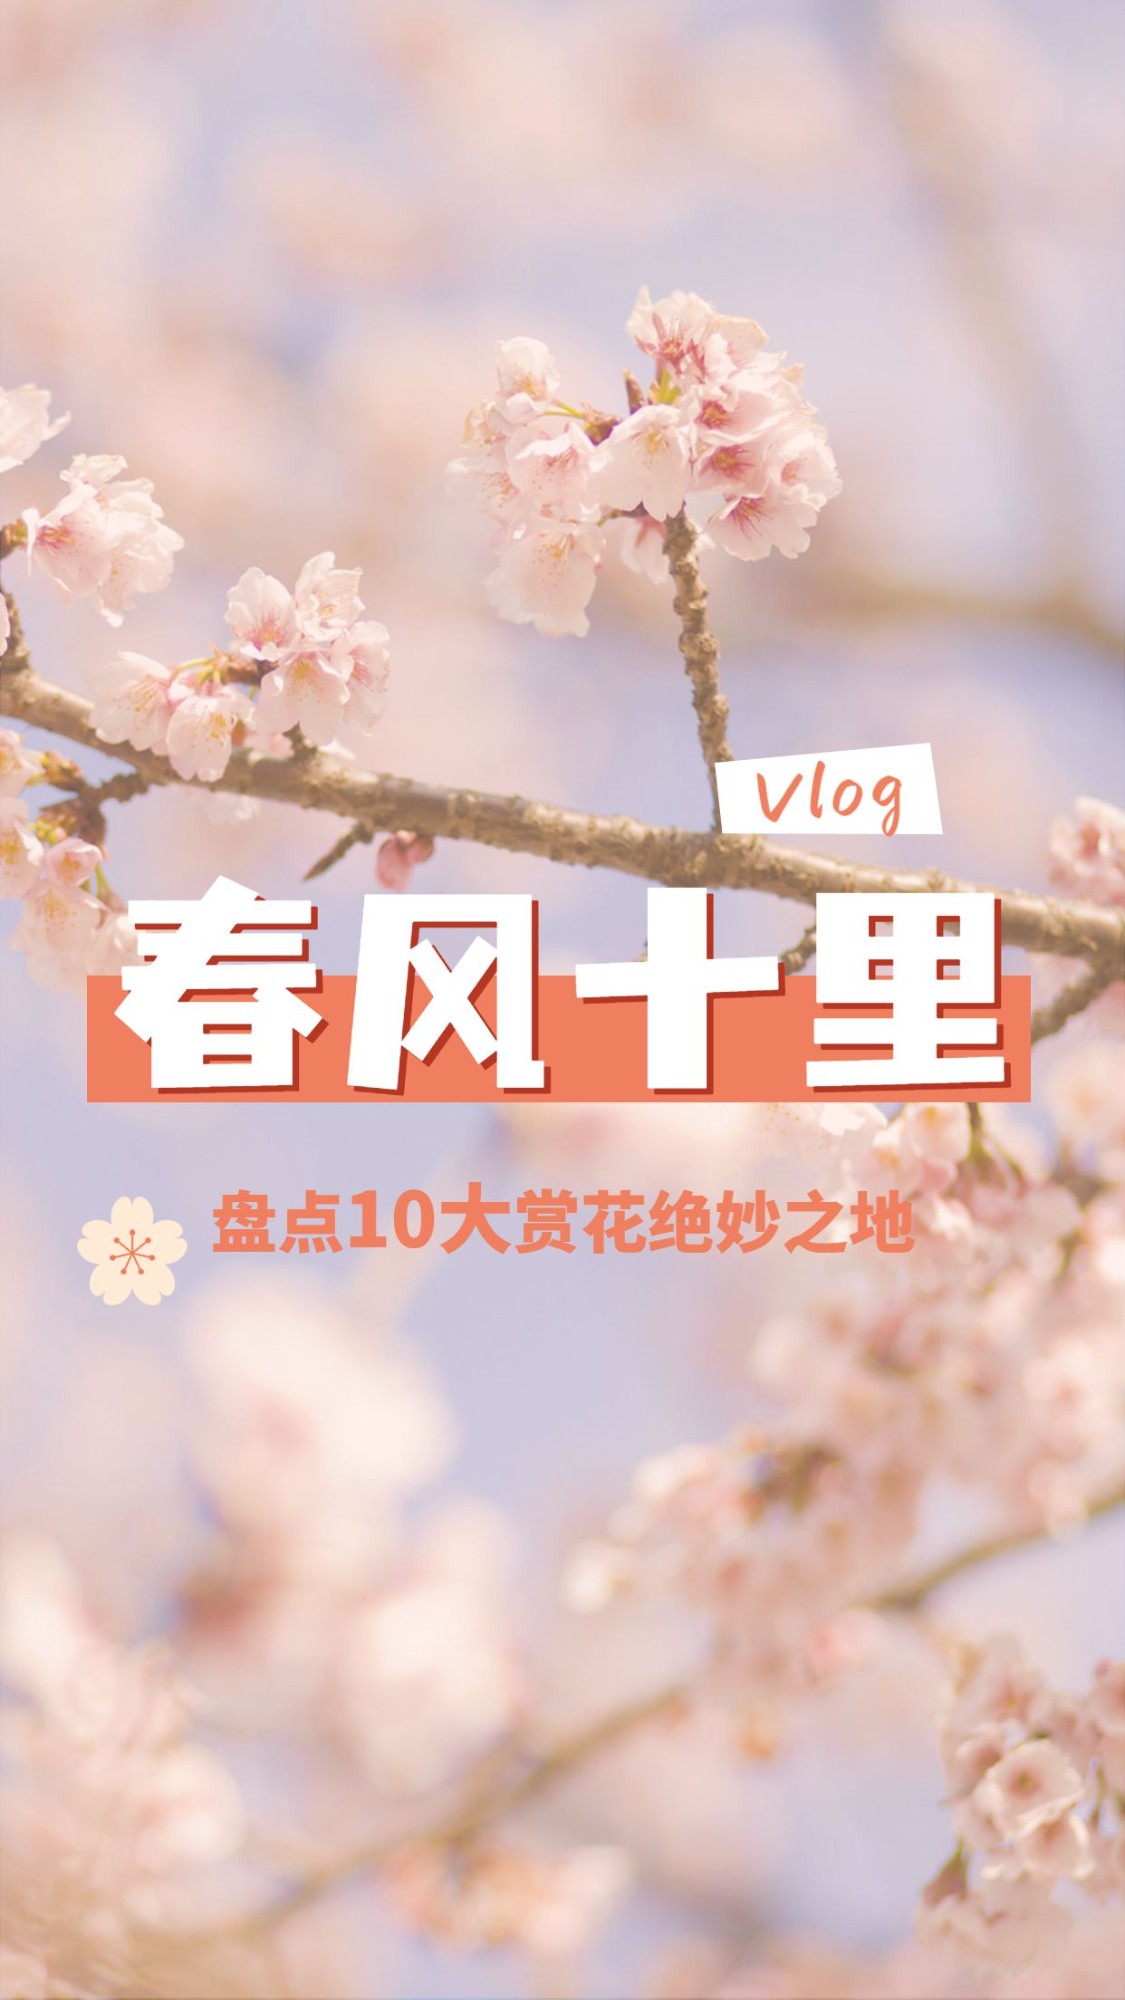 简约清新旅游生活vlog竖版视频封面